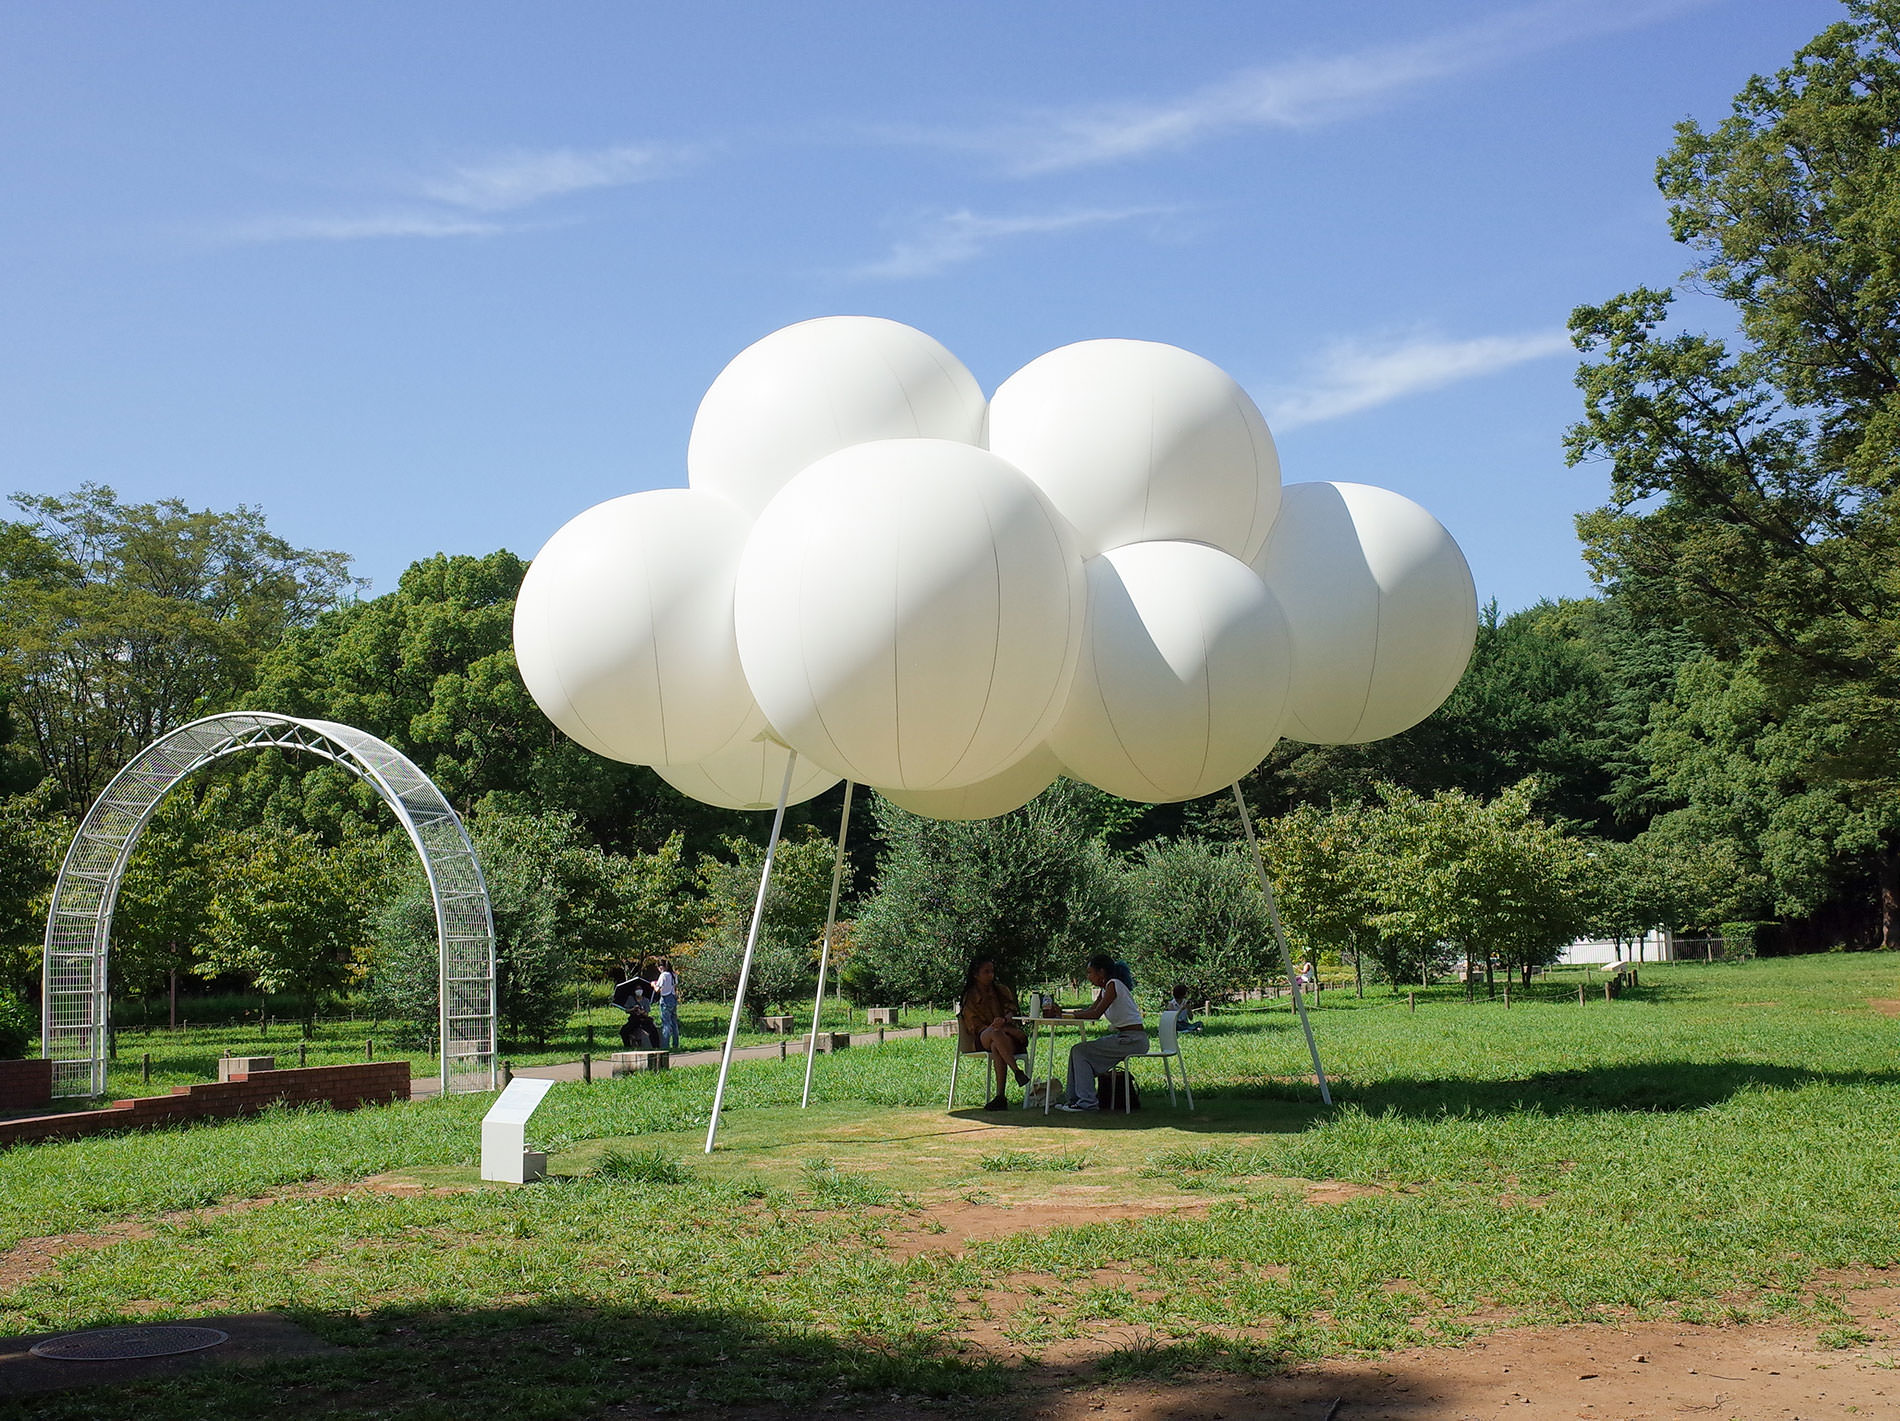 藤本壮介 Cloud pavilion（雲のパビリオン） | パビリオン・トウキョウ2021 | Cloud pavilion in Yoyogi Park | Pavilion Tokyo 2021